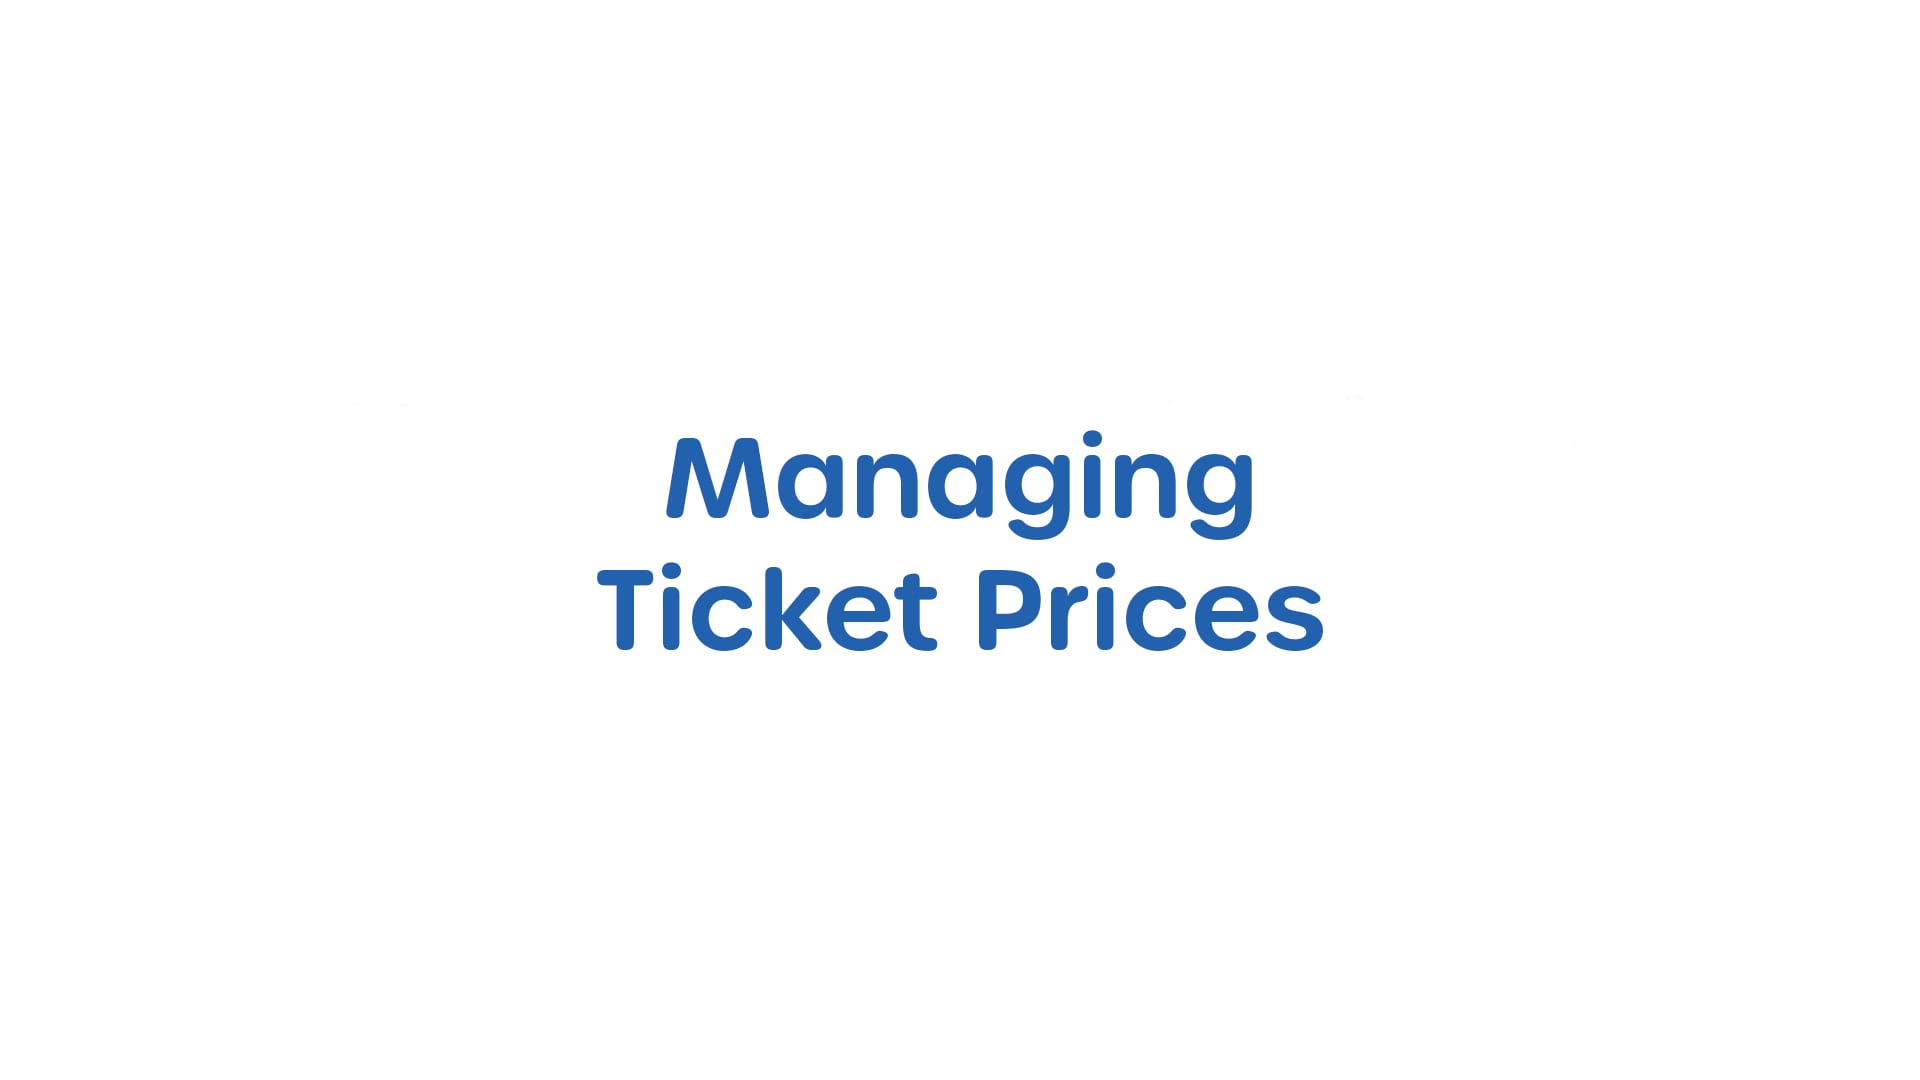 Managing Ticket Prices